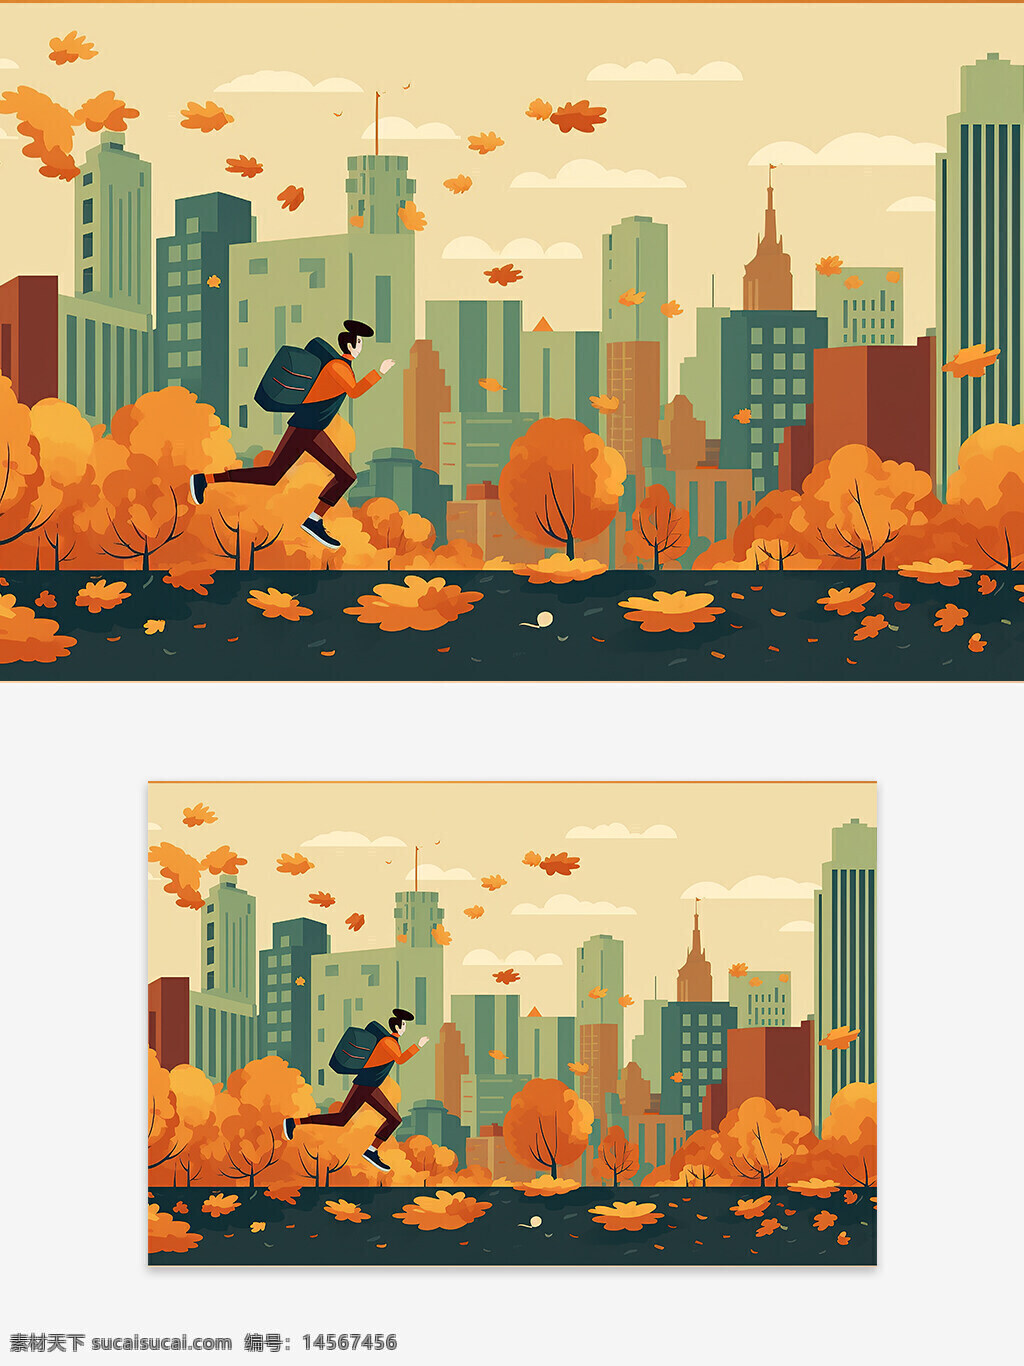 创意男孩 男孩奔跑 奔跑在城市中 插画背景 插画设计